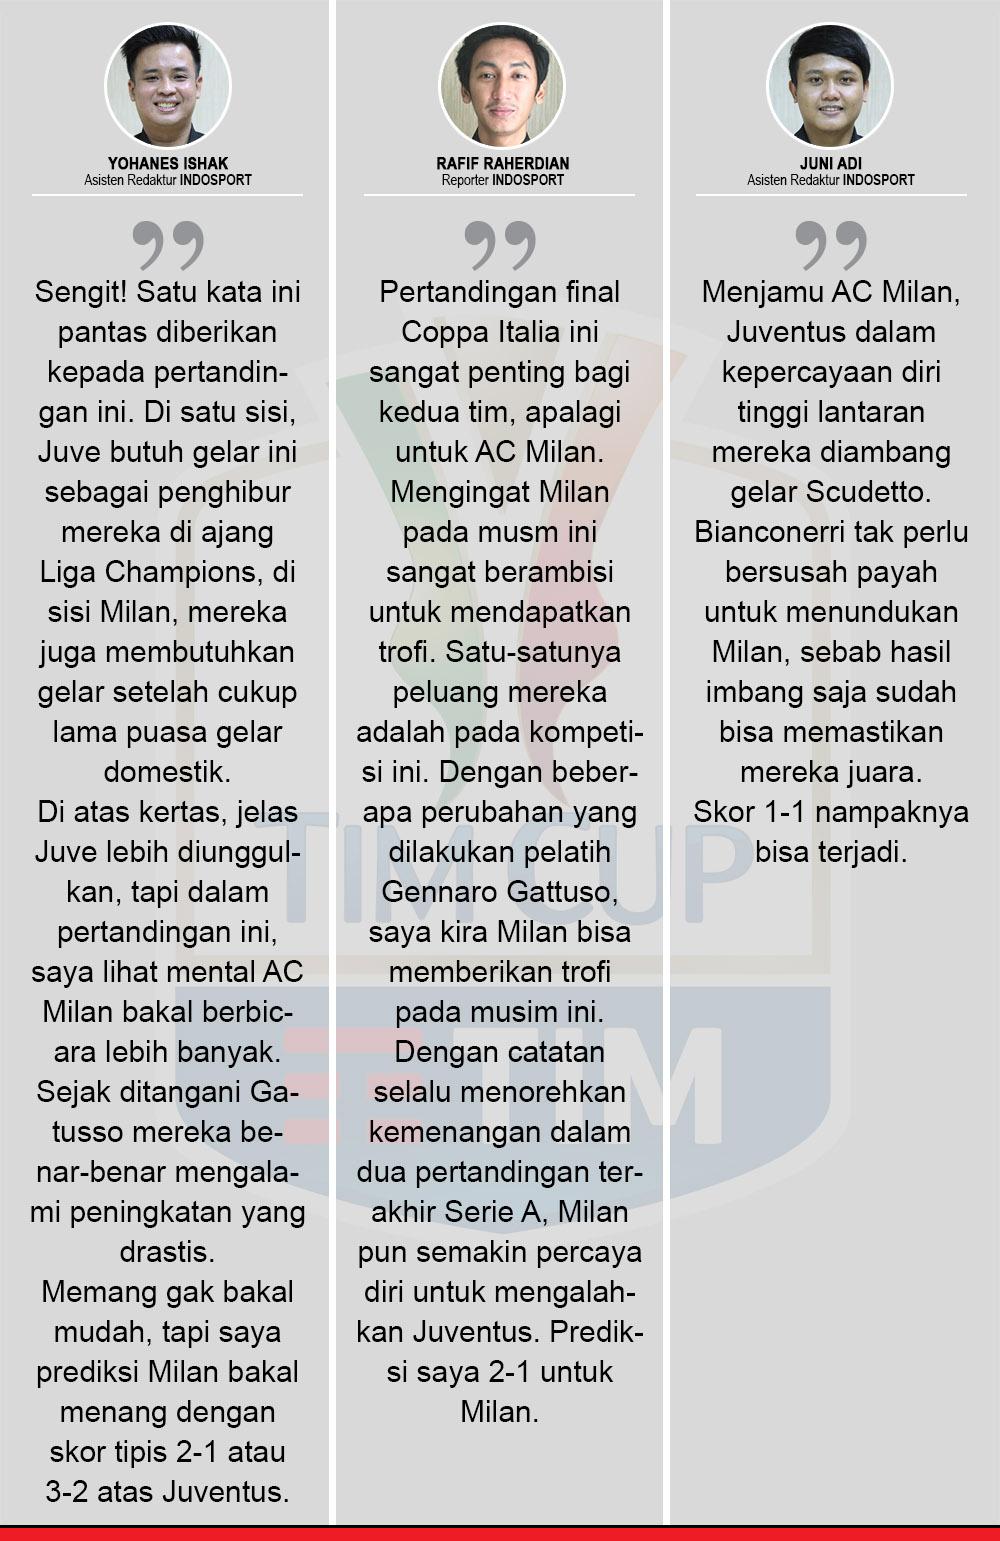 Komentar Prediksi Juventus vs AC Milan Copyright: Indosport.com